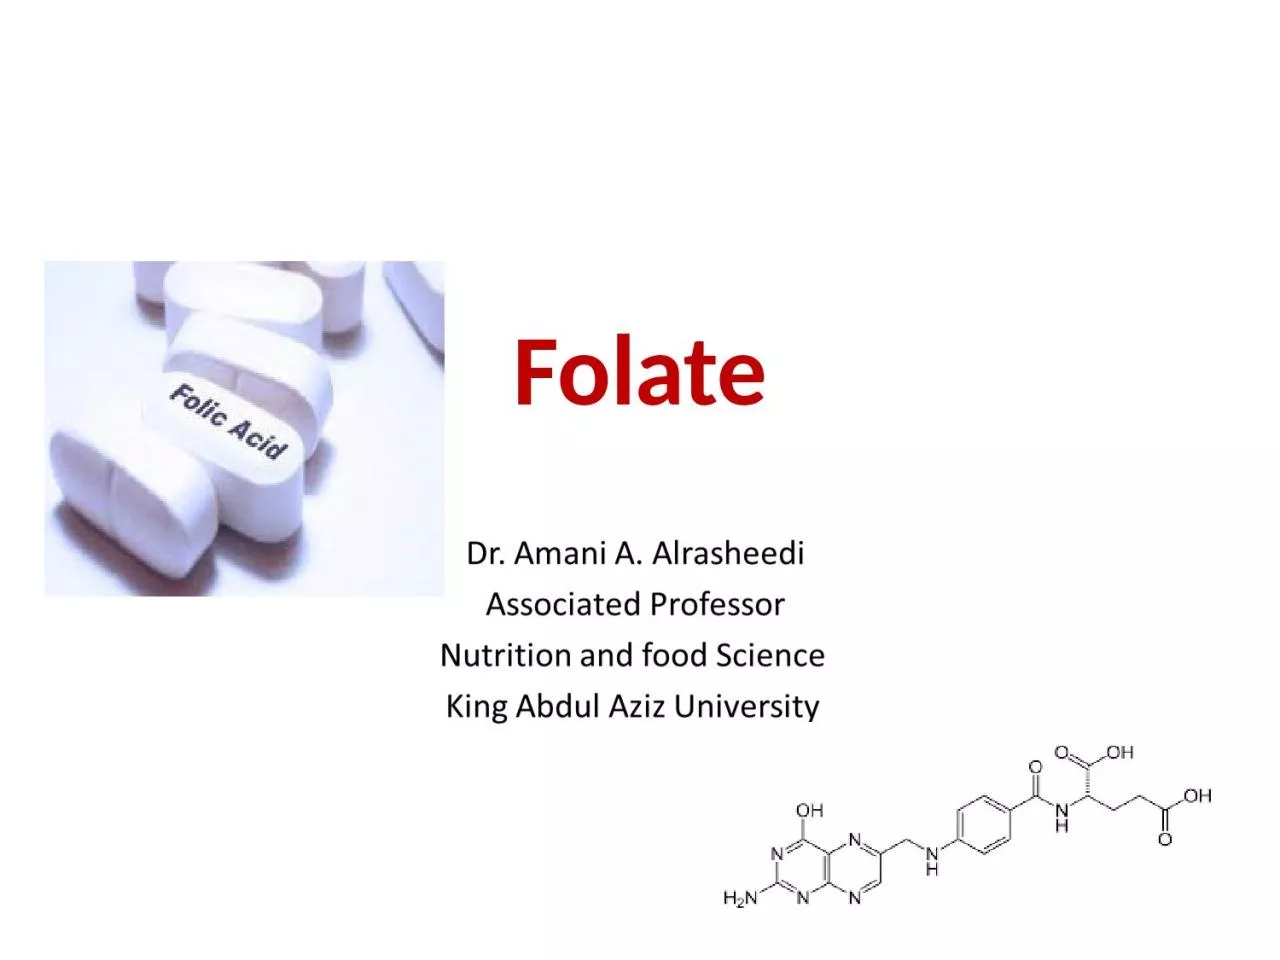 Folate Folate Folic acid